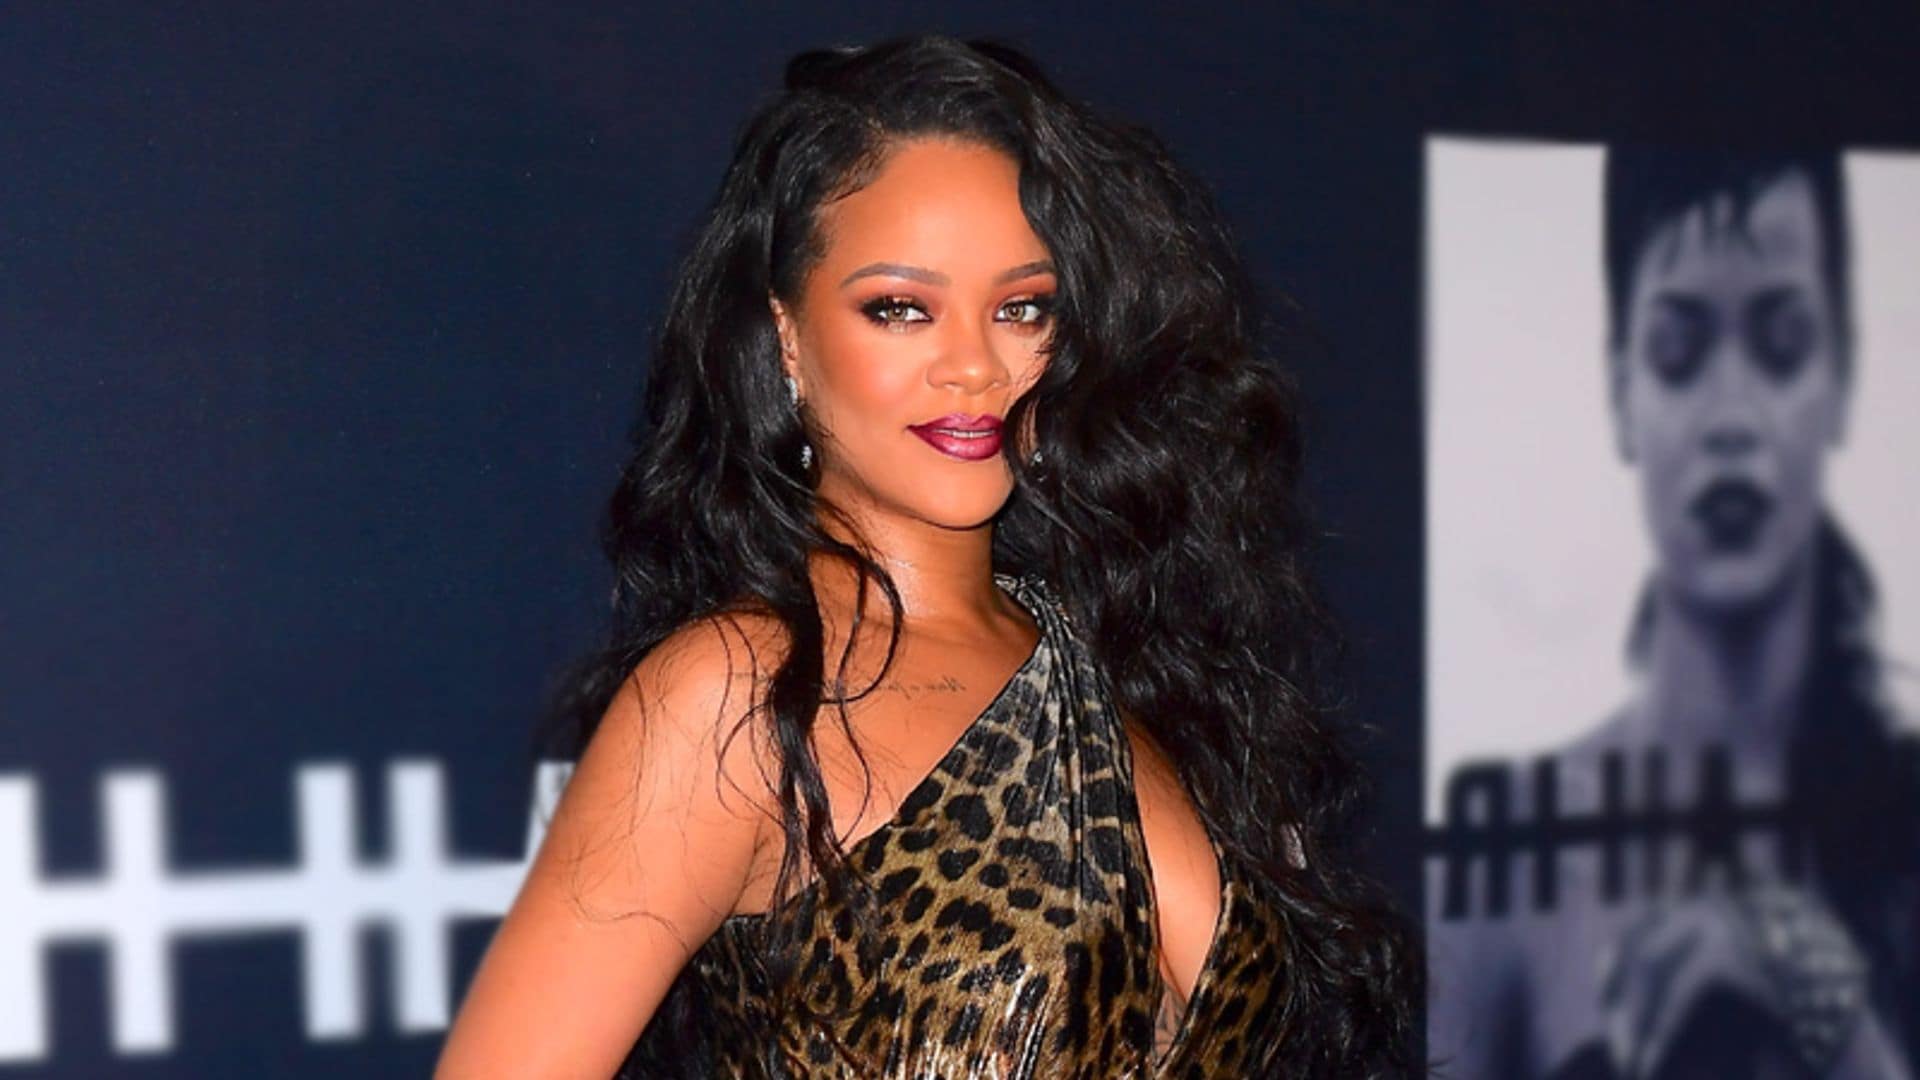 El primer 'selfie' de Rihanna de 2020 es toda una declaración de intenciones